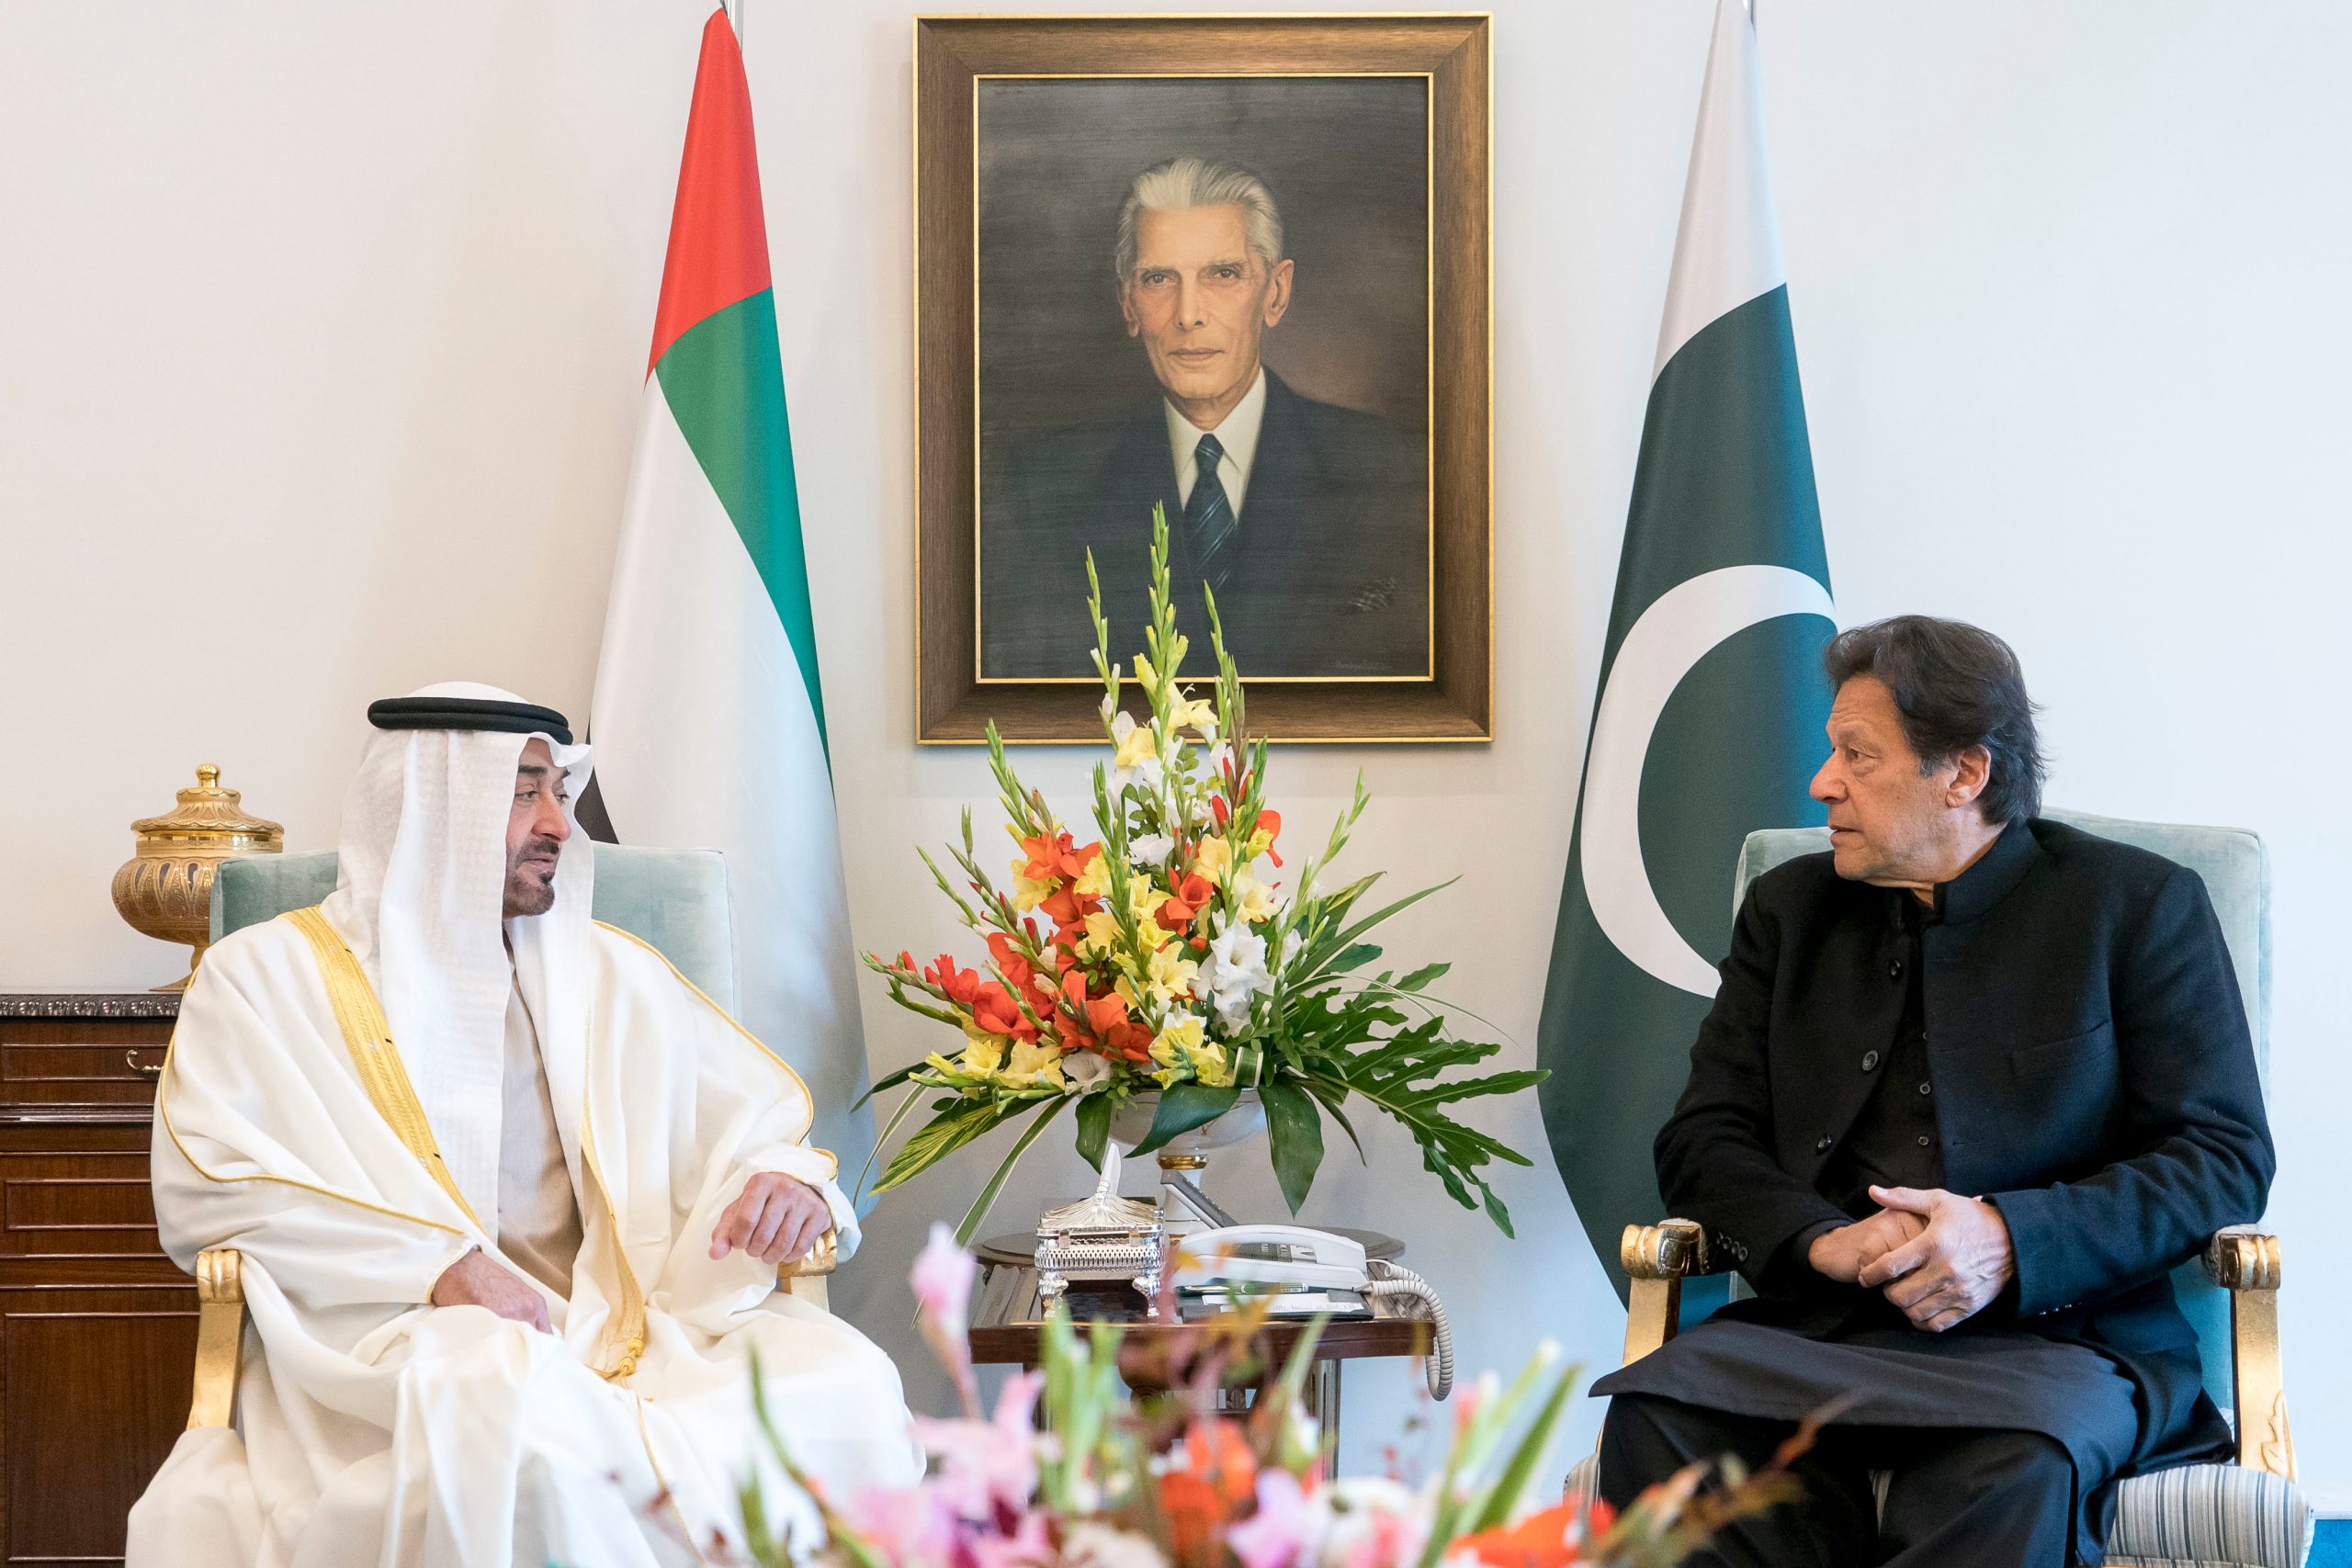 وصلت الى إسلام آباد اليوم وبحثت مع الصديق عمران خان رئيس وزراء باكستان.. سبل تعزيز العلاقات الثنائية بين بلدينا ومجمل القضايا الإقليمية والدولية محل الاهتمام المشترك